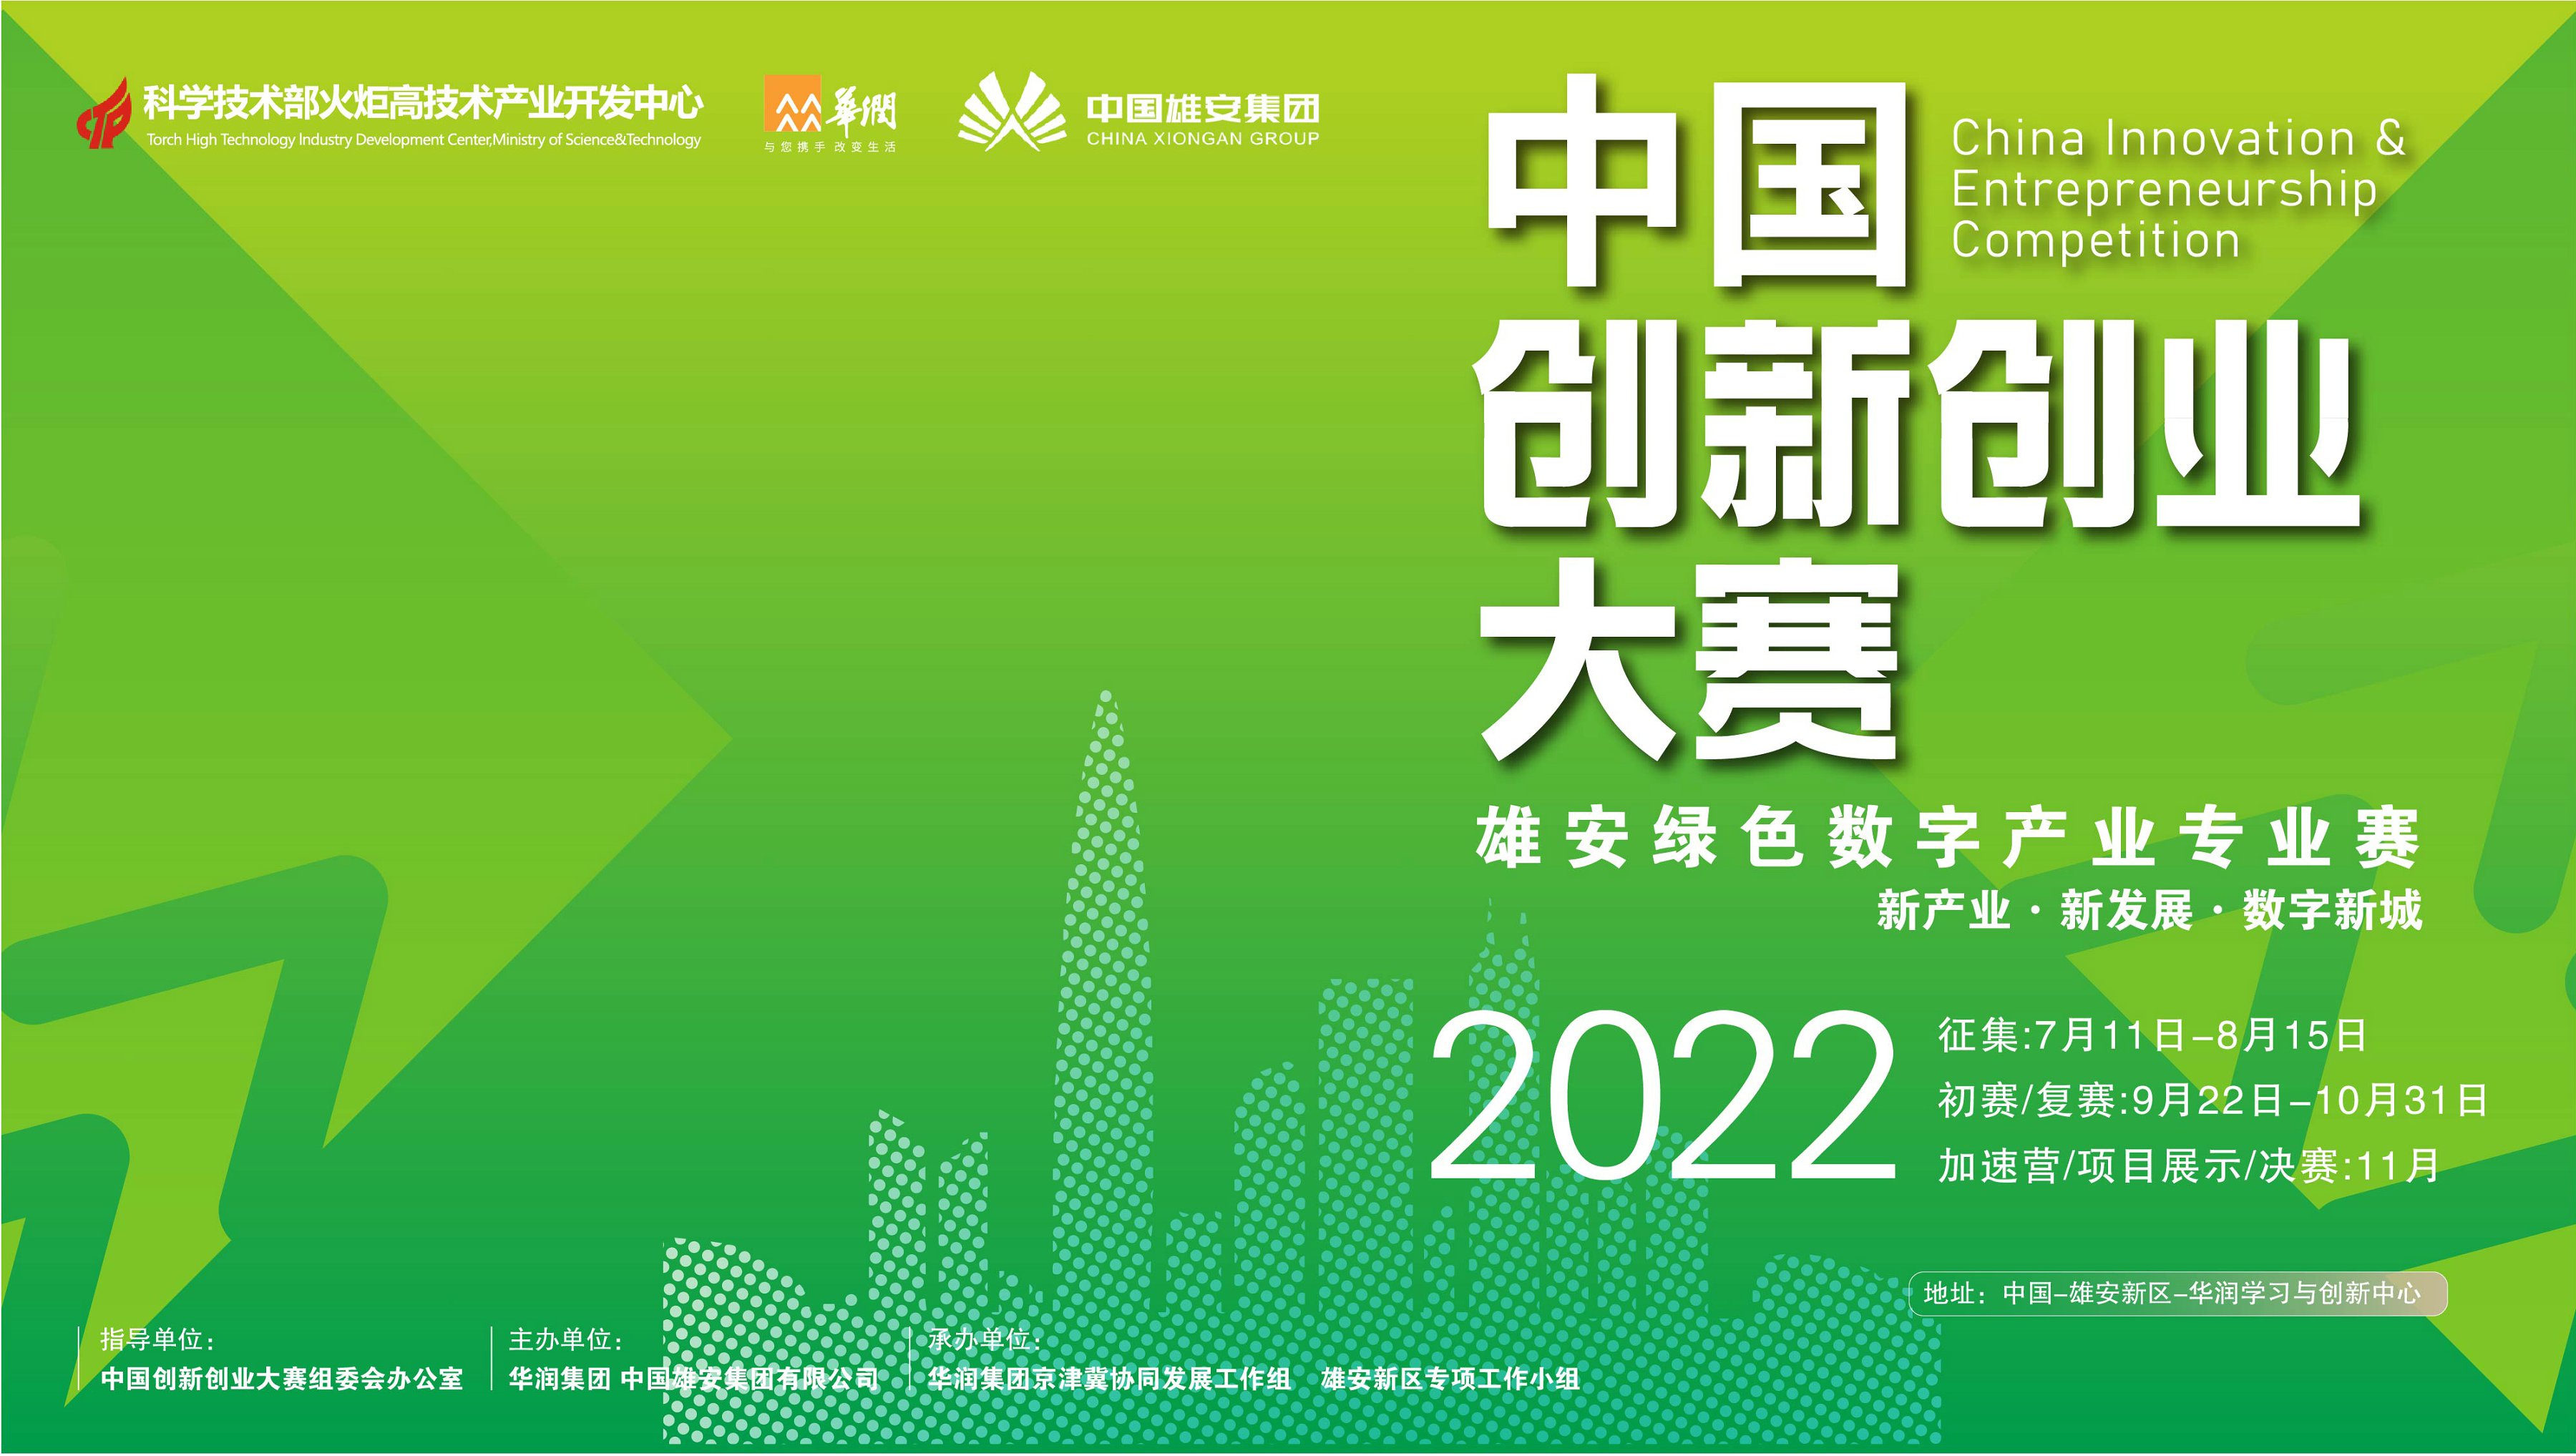 第十一届中国创新创业大赛大中小企业融通雄安绿色数字产业专业赛开赛